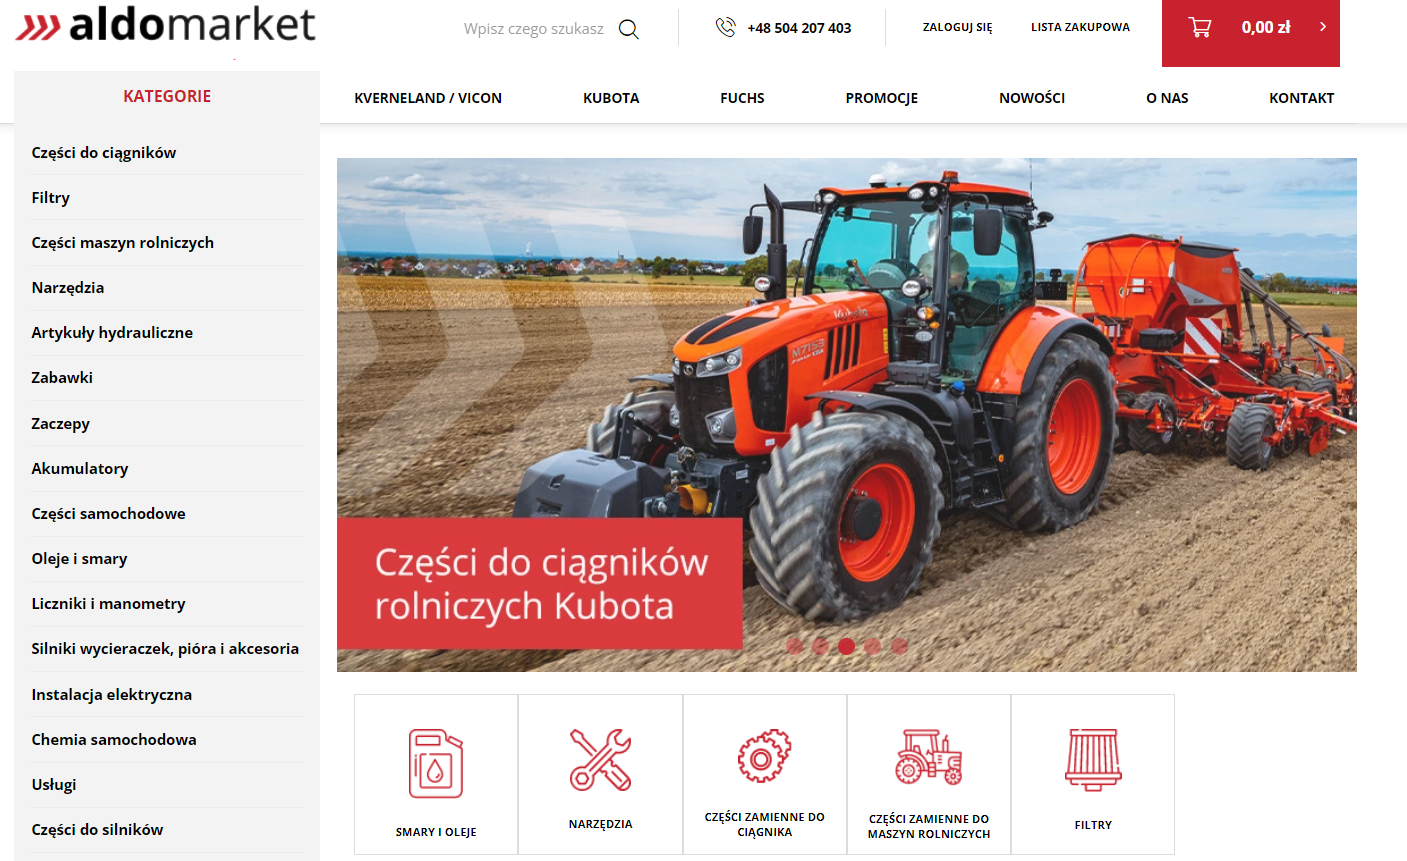 Aldomarket - internetowy sklep rolniczy